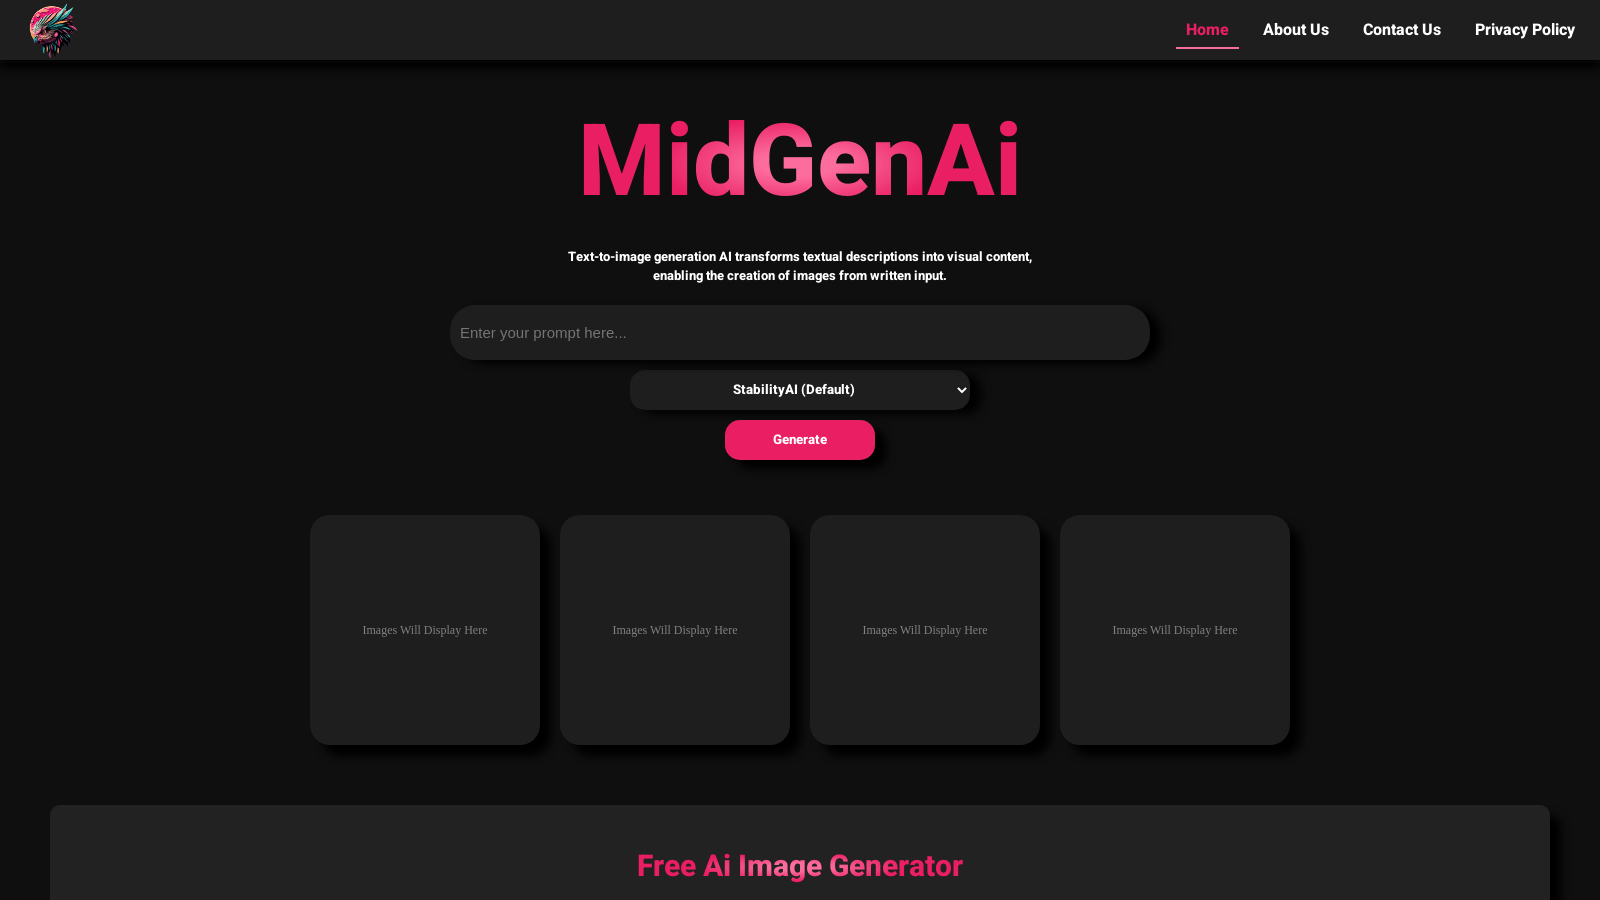 midgenai.com